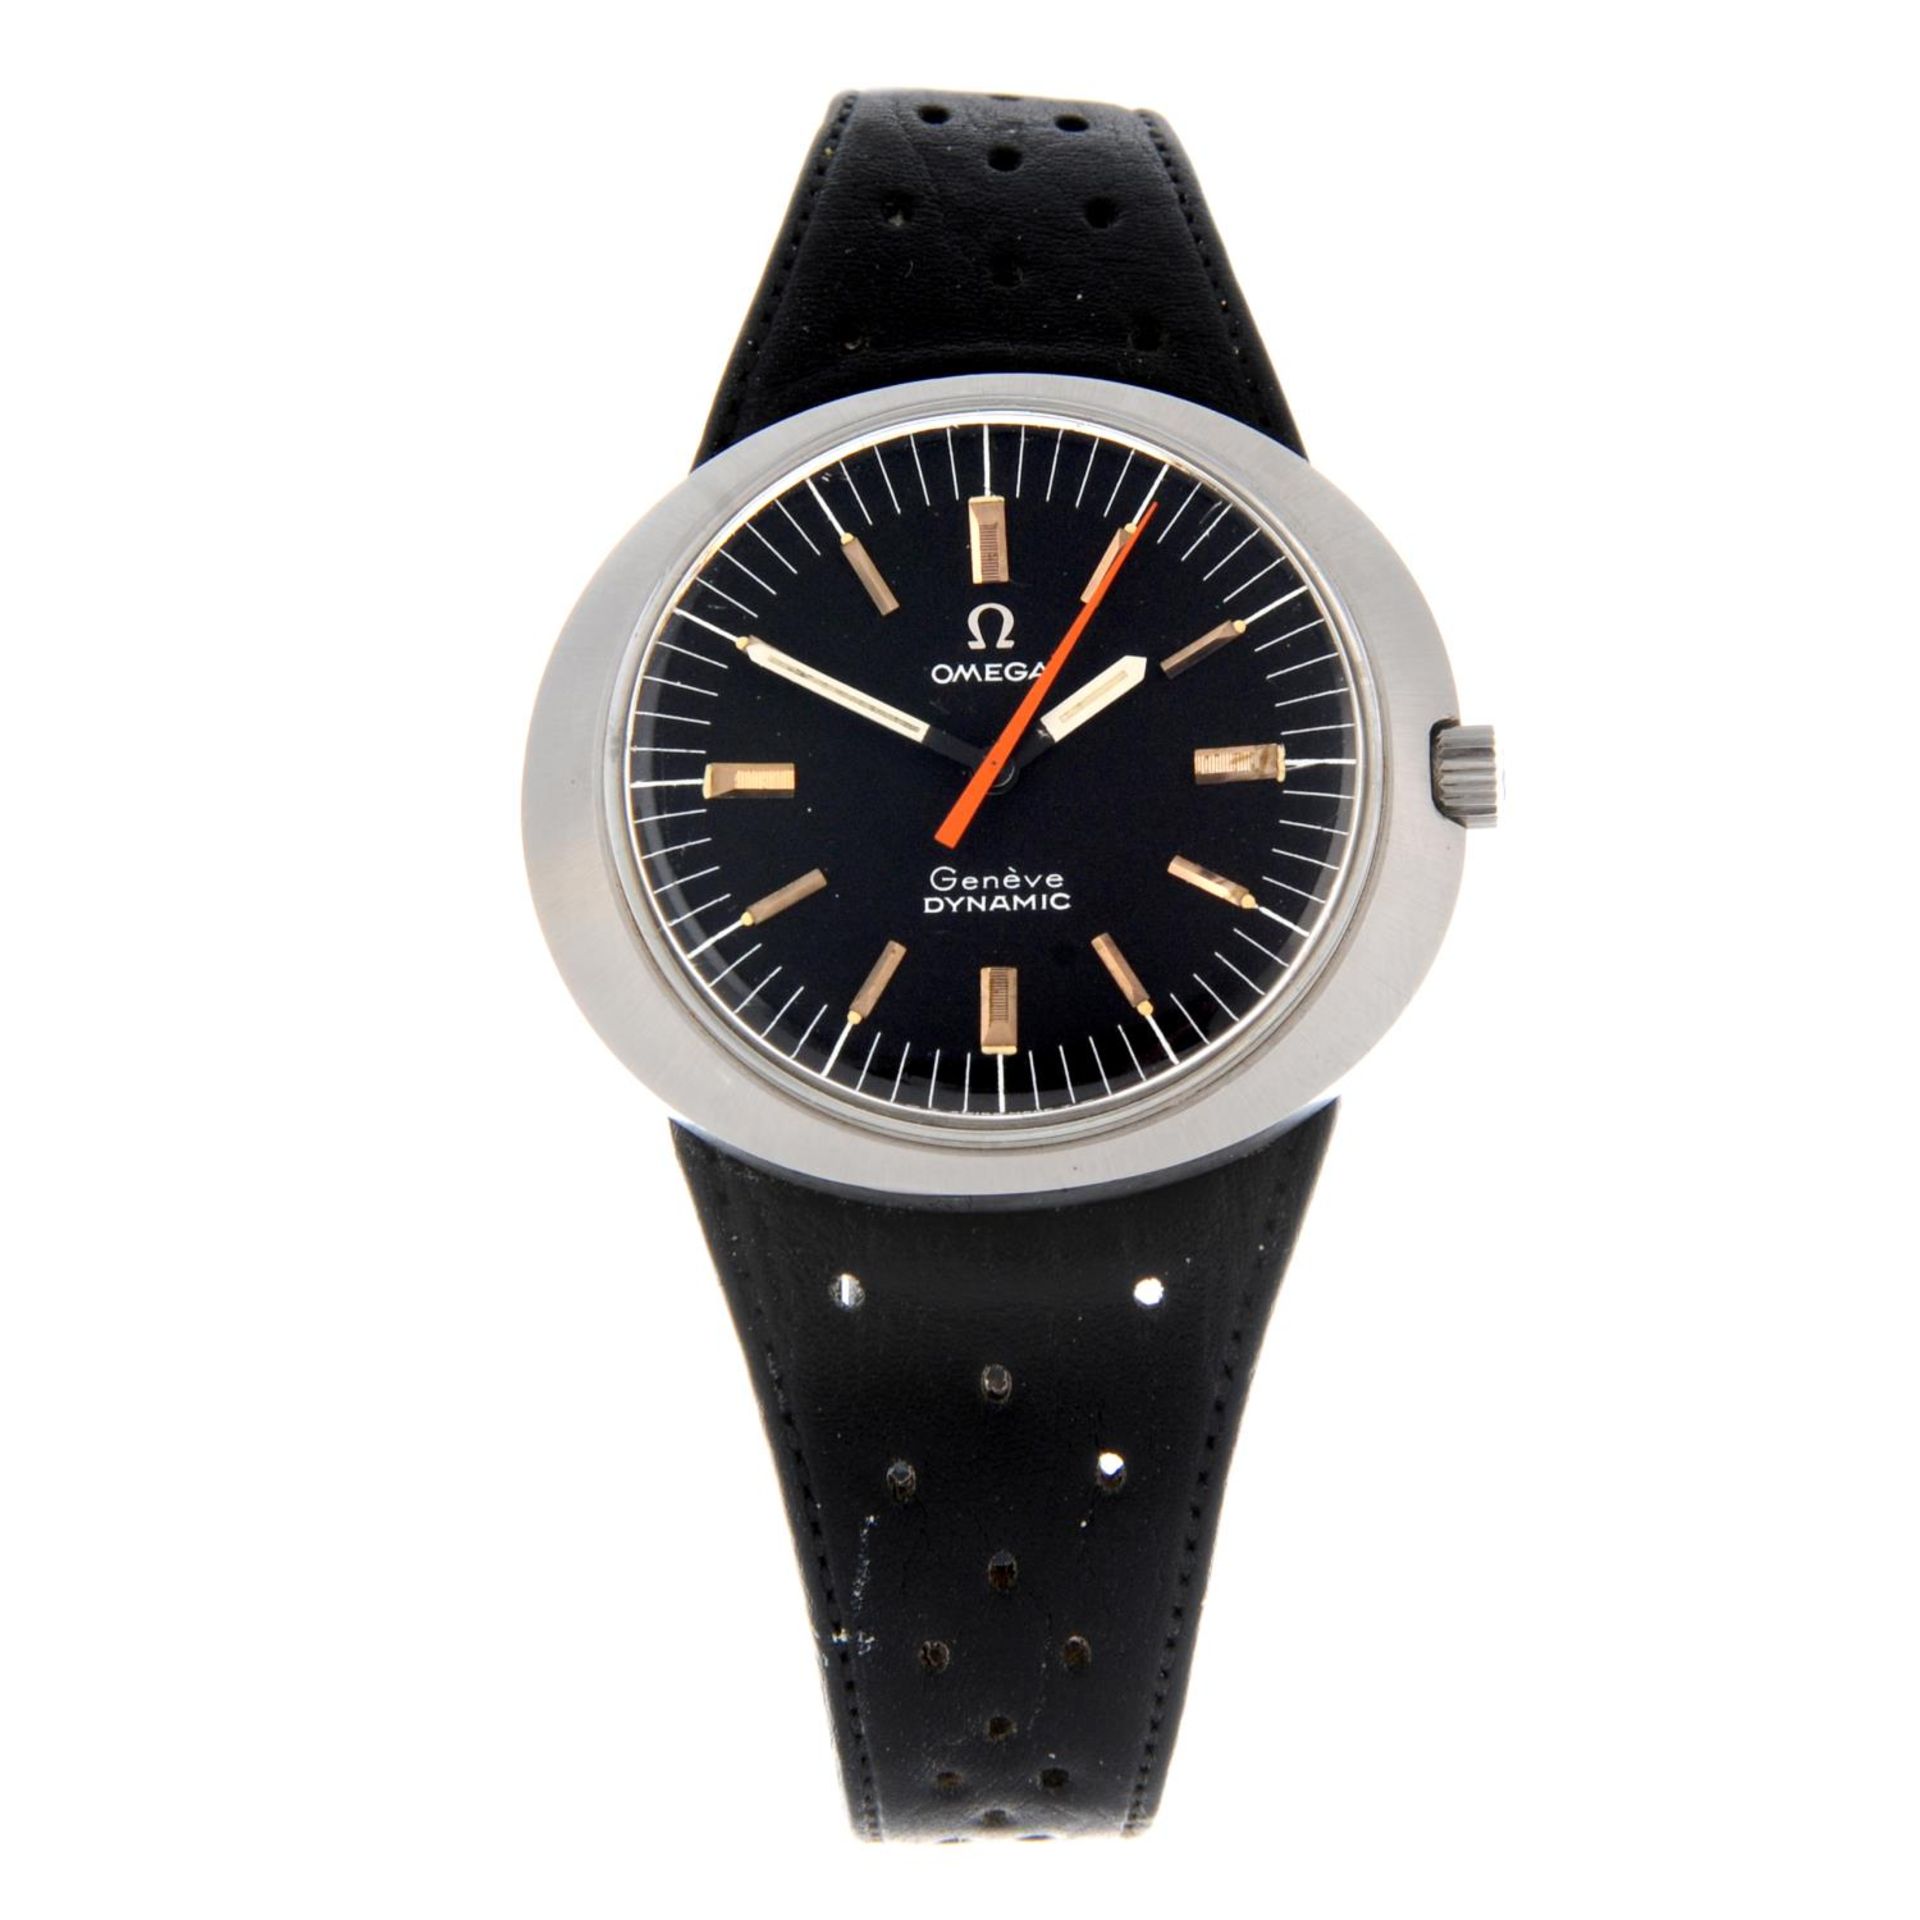 OMEGA - a Geneve Dynamic wrist watch.